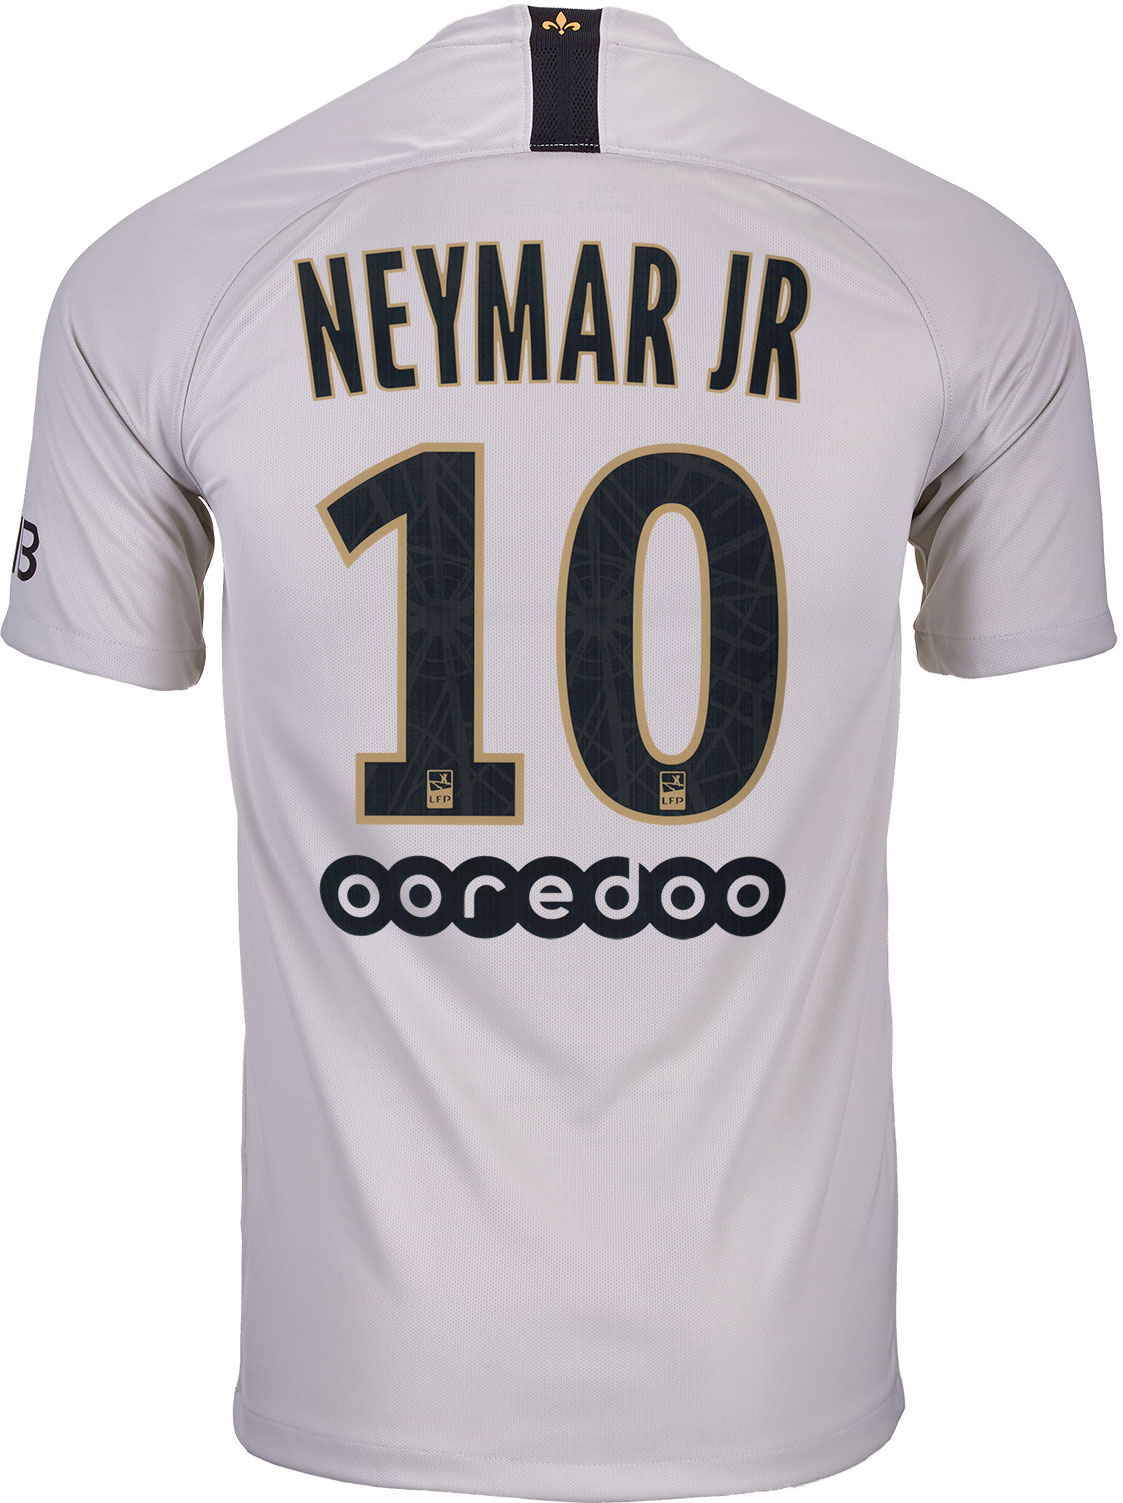 Nike Neymar Jr. PSG Away Jersey - Youth 2018-19 - SoccerPro